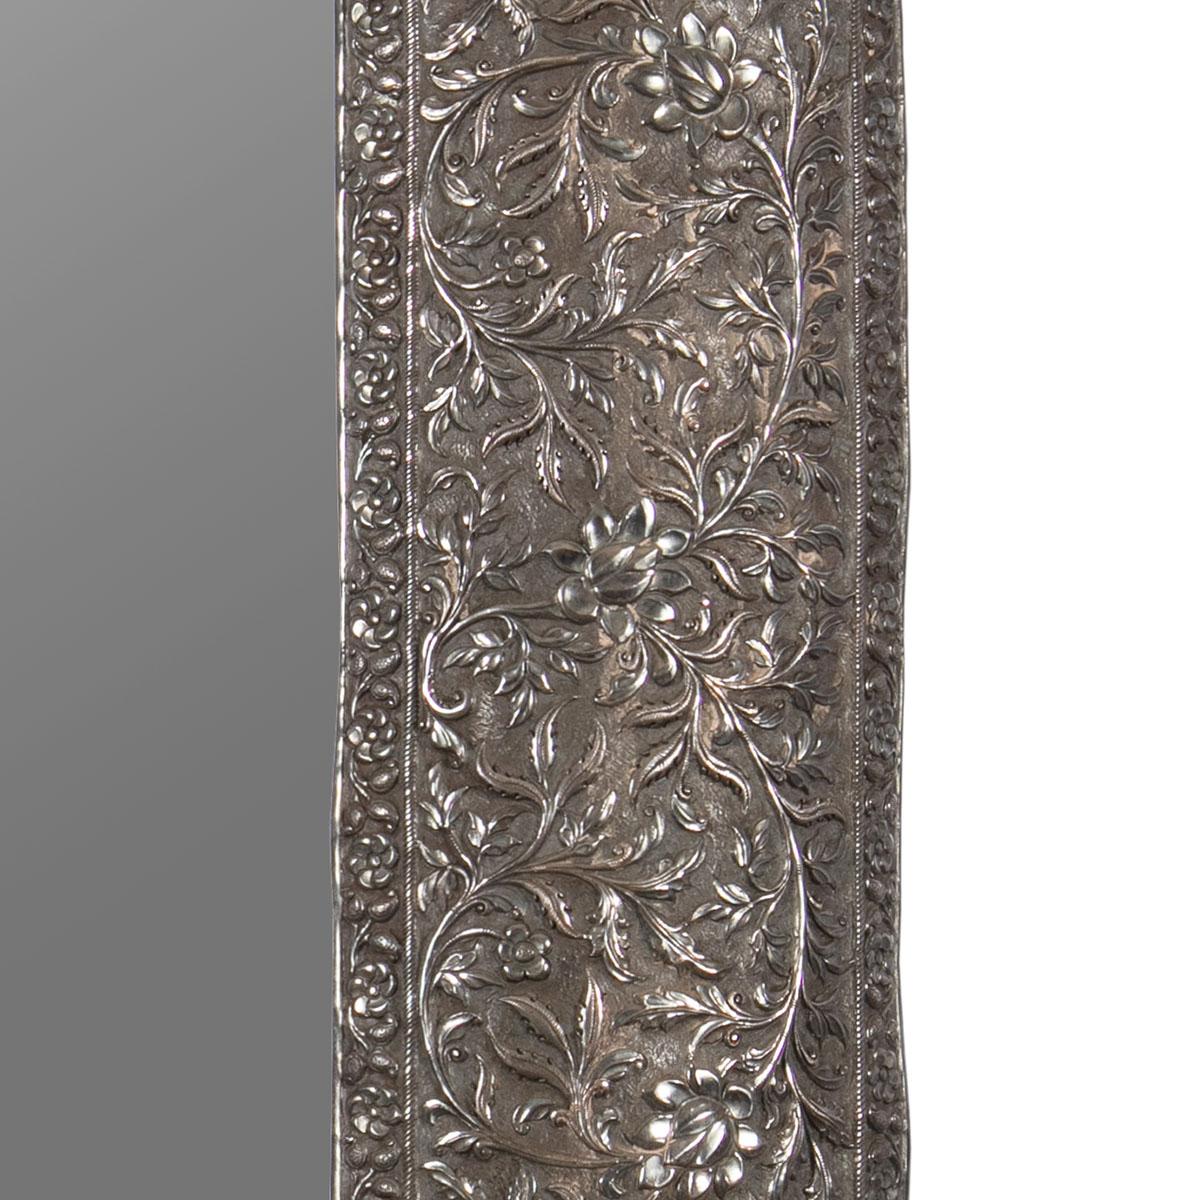 Cadre de miroir indien du milieu du 19e siècle, en argent massif

Les ornements en argent massif sont rares, la plupart ont été fondus et réutilisés.

Ce cadre de miroir repoussé est finement modelé et ciselé avec des détails précis.

Seul un